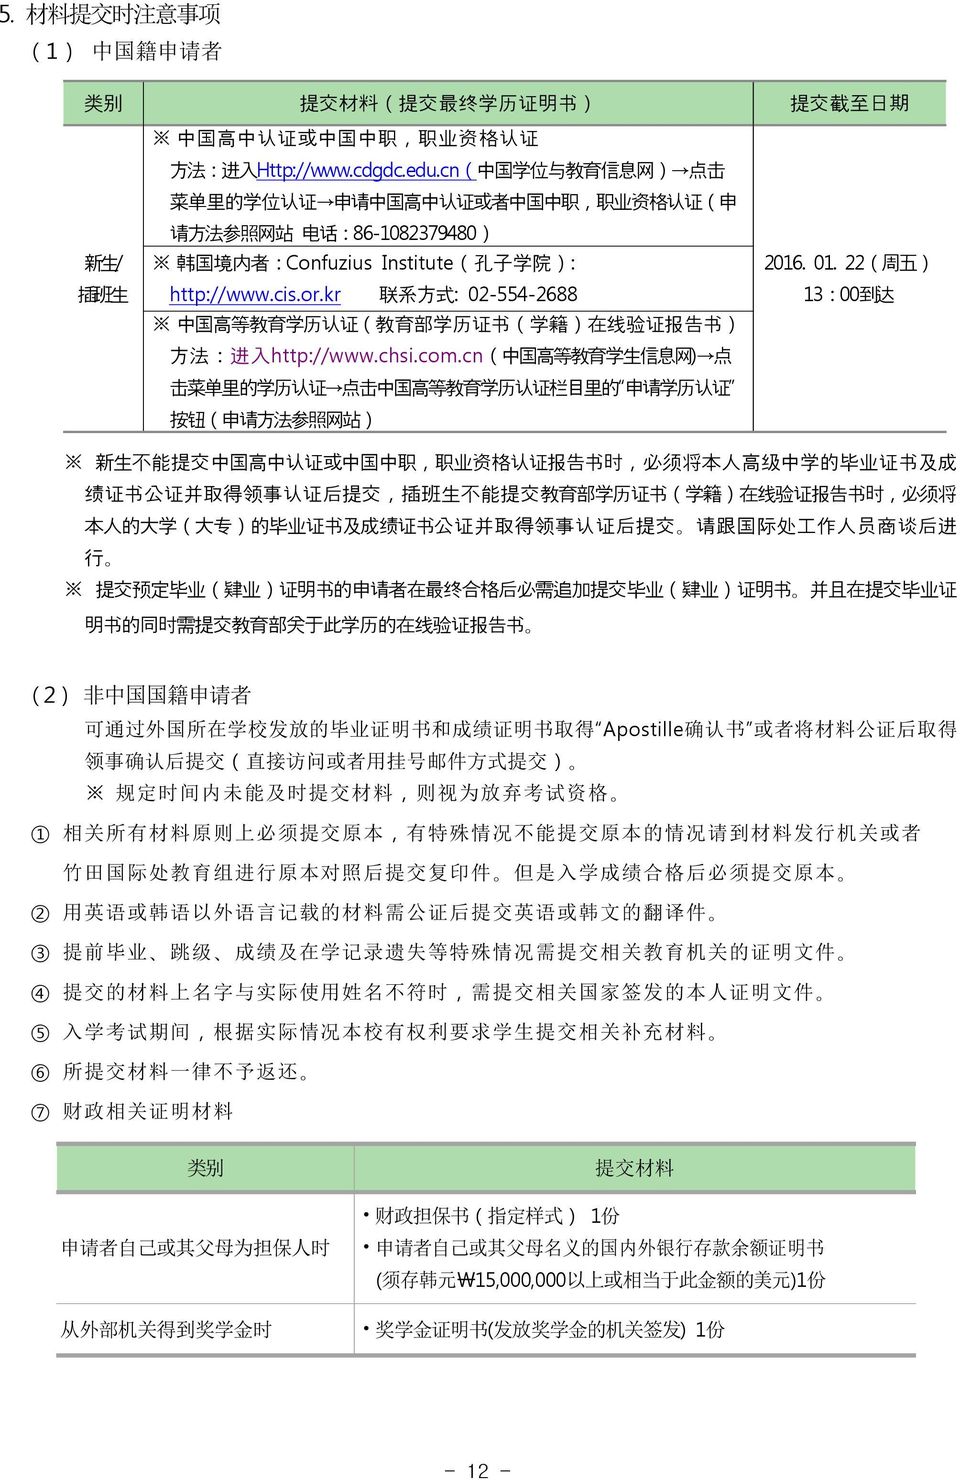 kr 联 系 方 式 : 02-554-2688 中 国 高 等 教 育 学 历 认 证 ( 教 育 部 学 历 证 书 ( 学 籍 ) 在 线 验 证 报 告 书 ) 方 法 : 进 入 http://www.chsi.com.